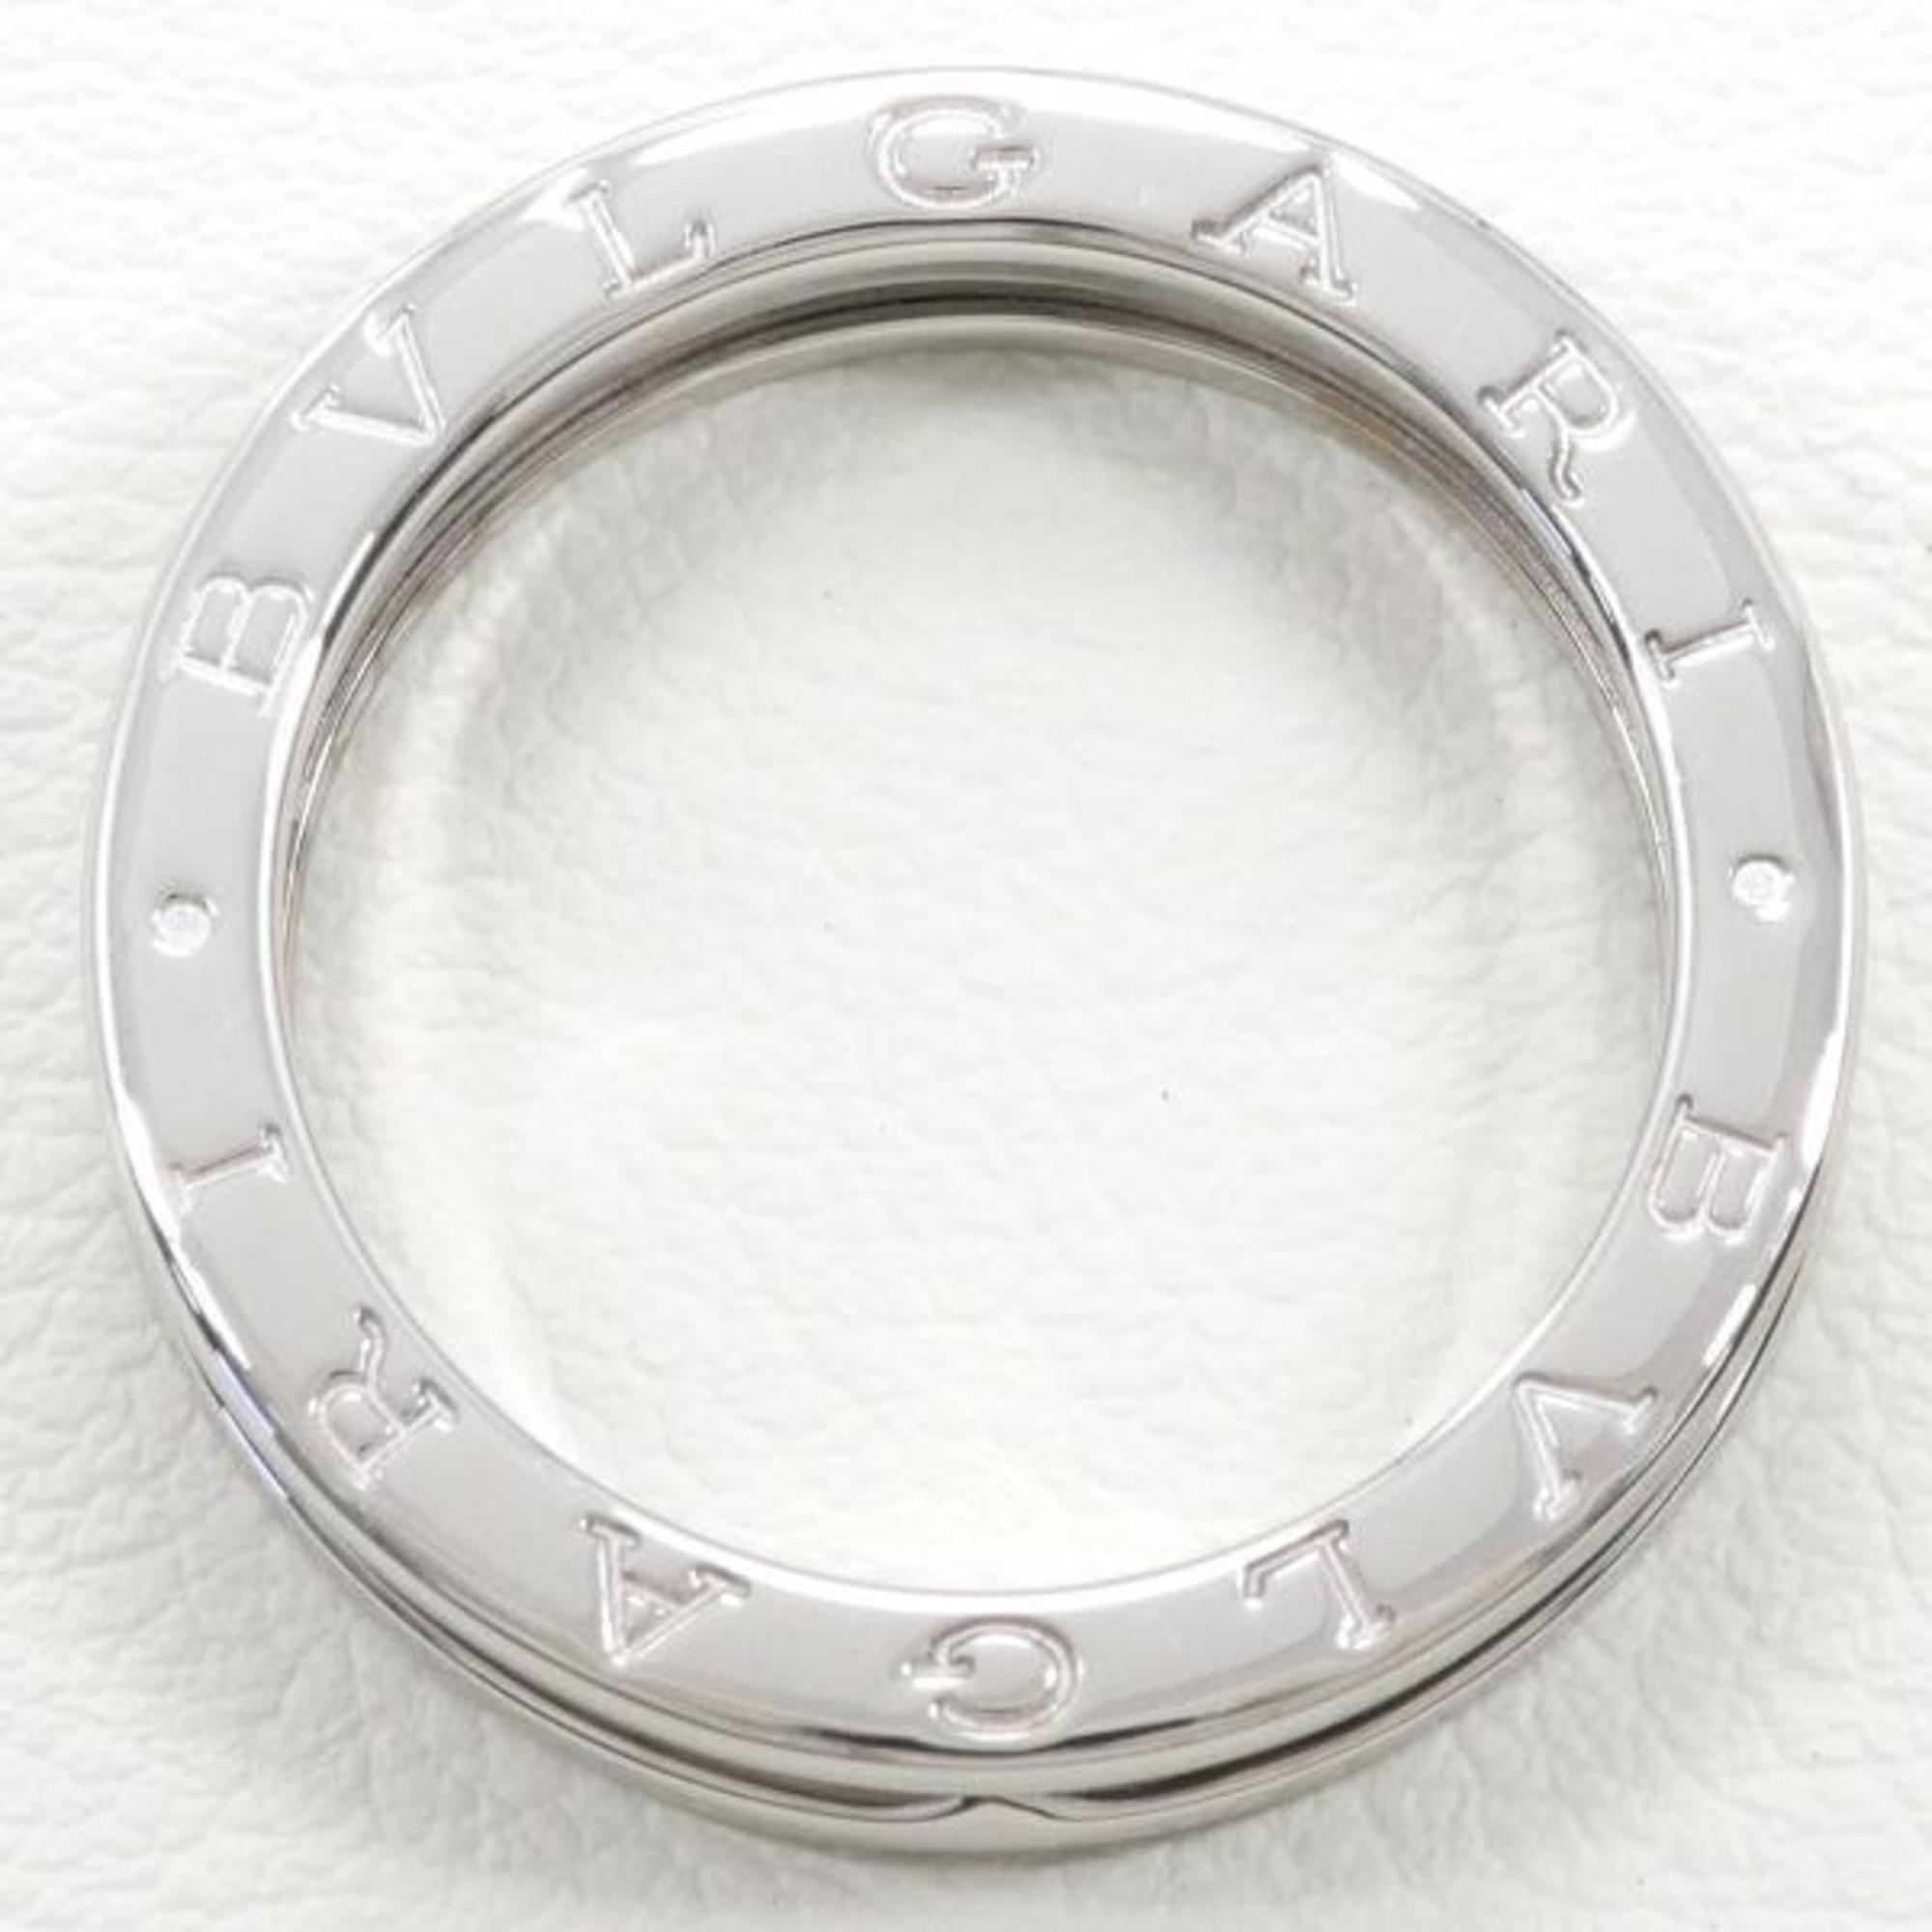 Bvlgari B Zero One K18WG Ring Total Weight Approx. 7.4g Jewelry